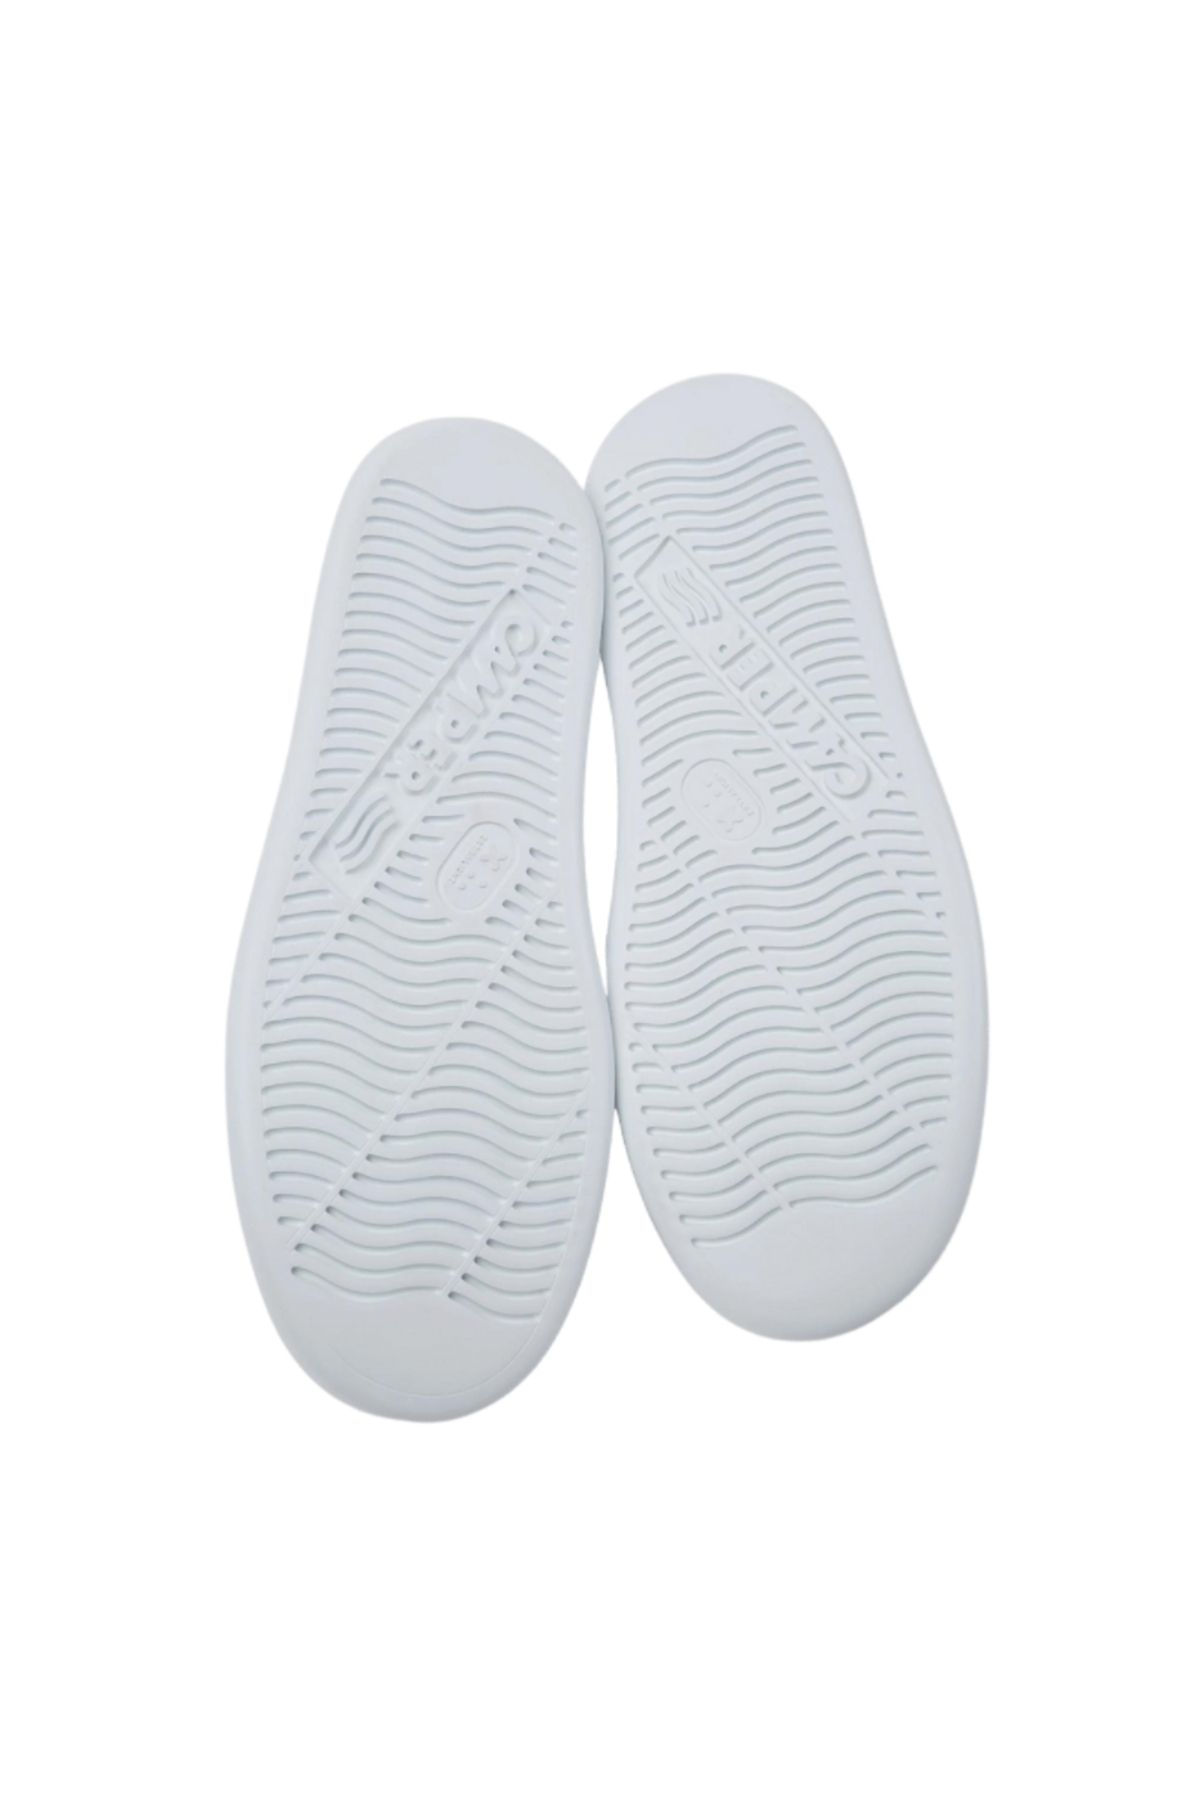 CAMPER کفش های روزمره مردانه K100226-047-Beyaz